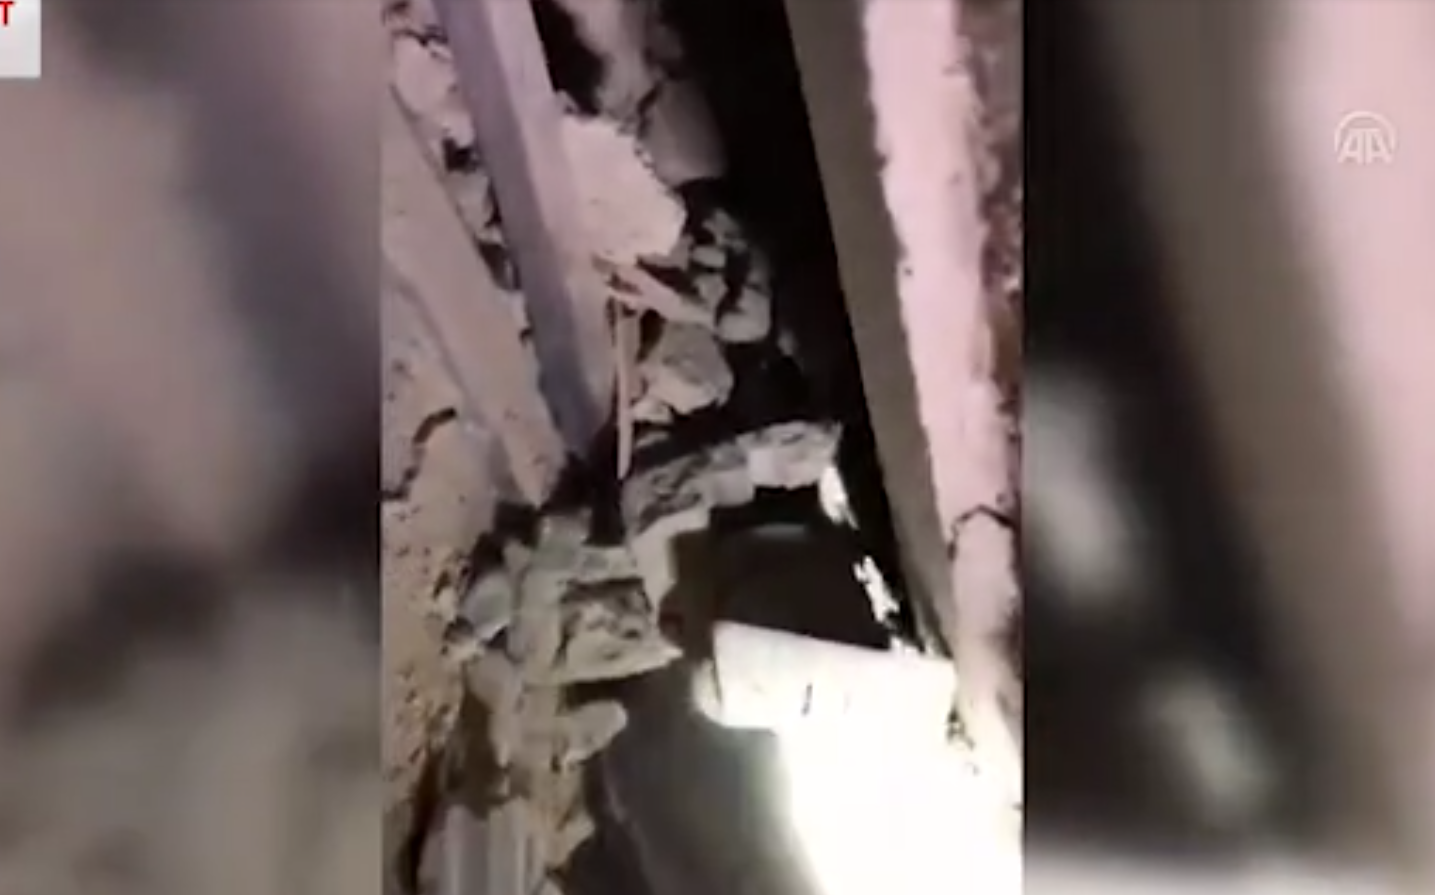 Pamje rrëqethëse/ Ndodh mrekullia në Turqi, nënë e bir nxirren të gjallë nga rrënojat pas 23 orësh